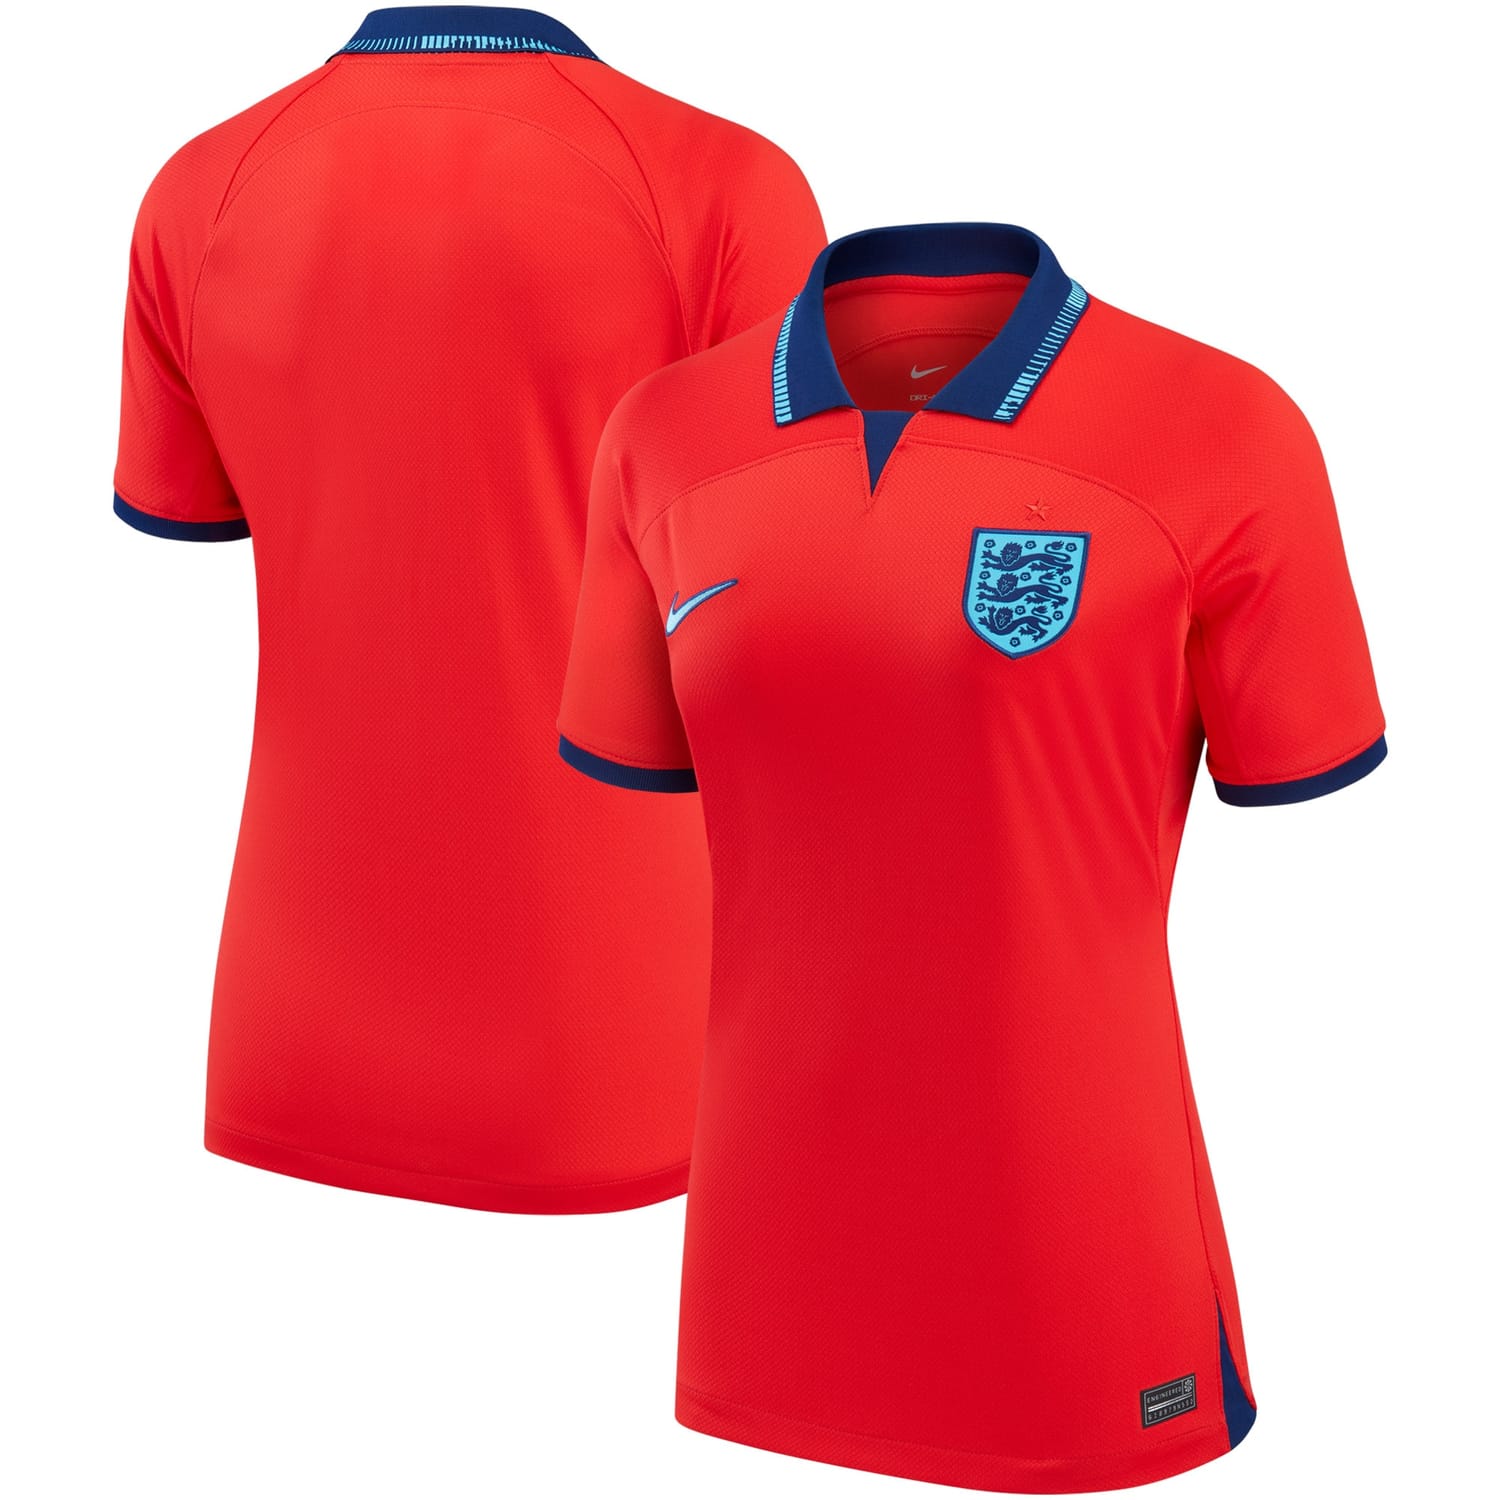 England National Team Away Jersey Shirt Red 2022-23 for Women